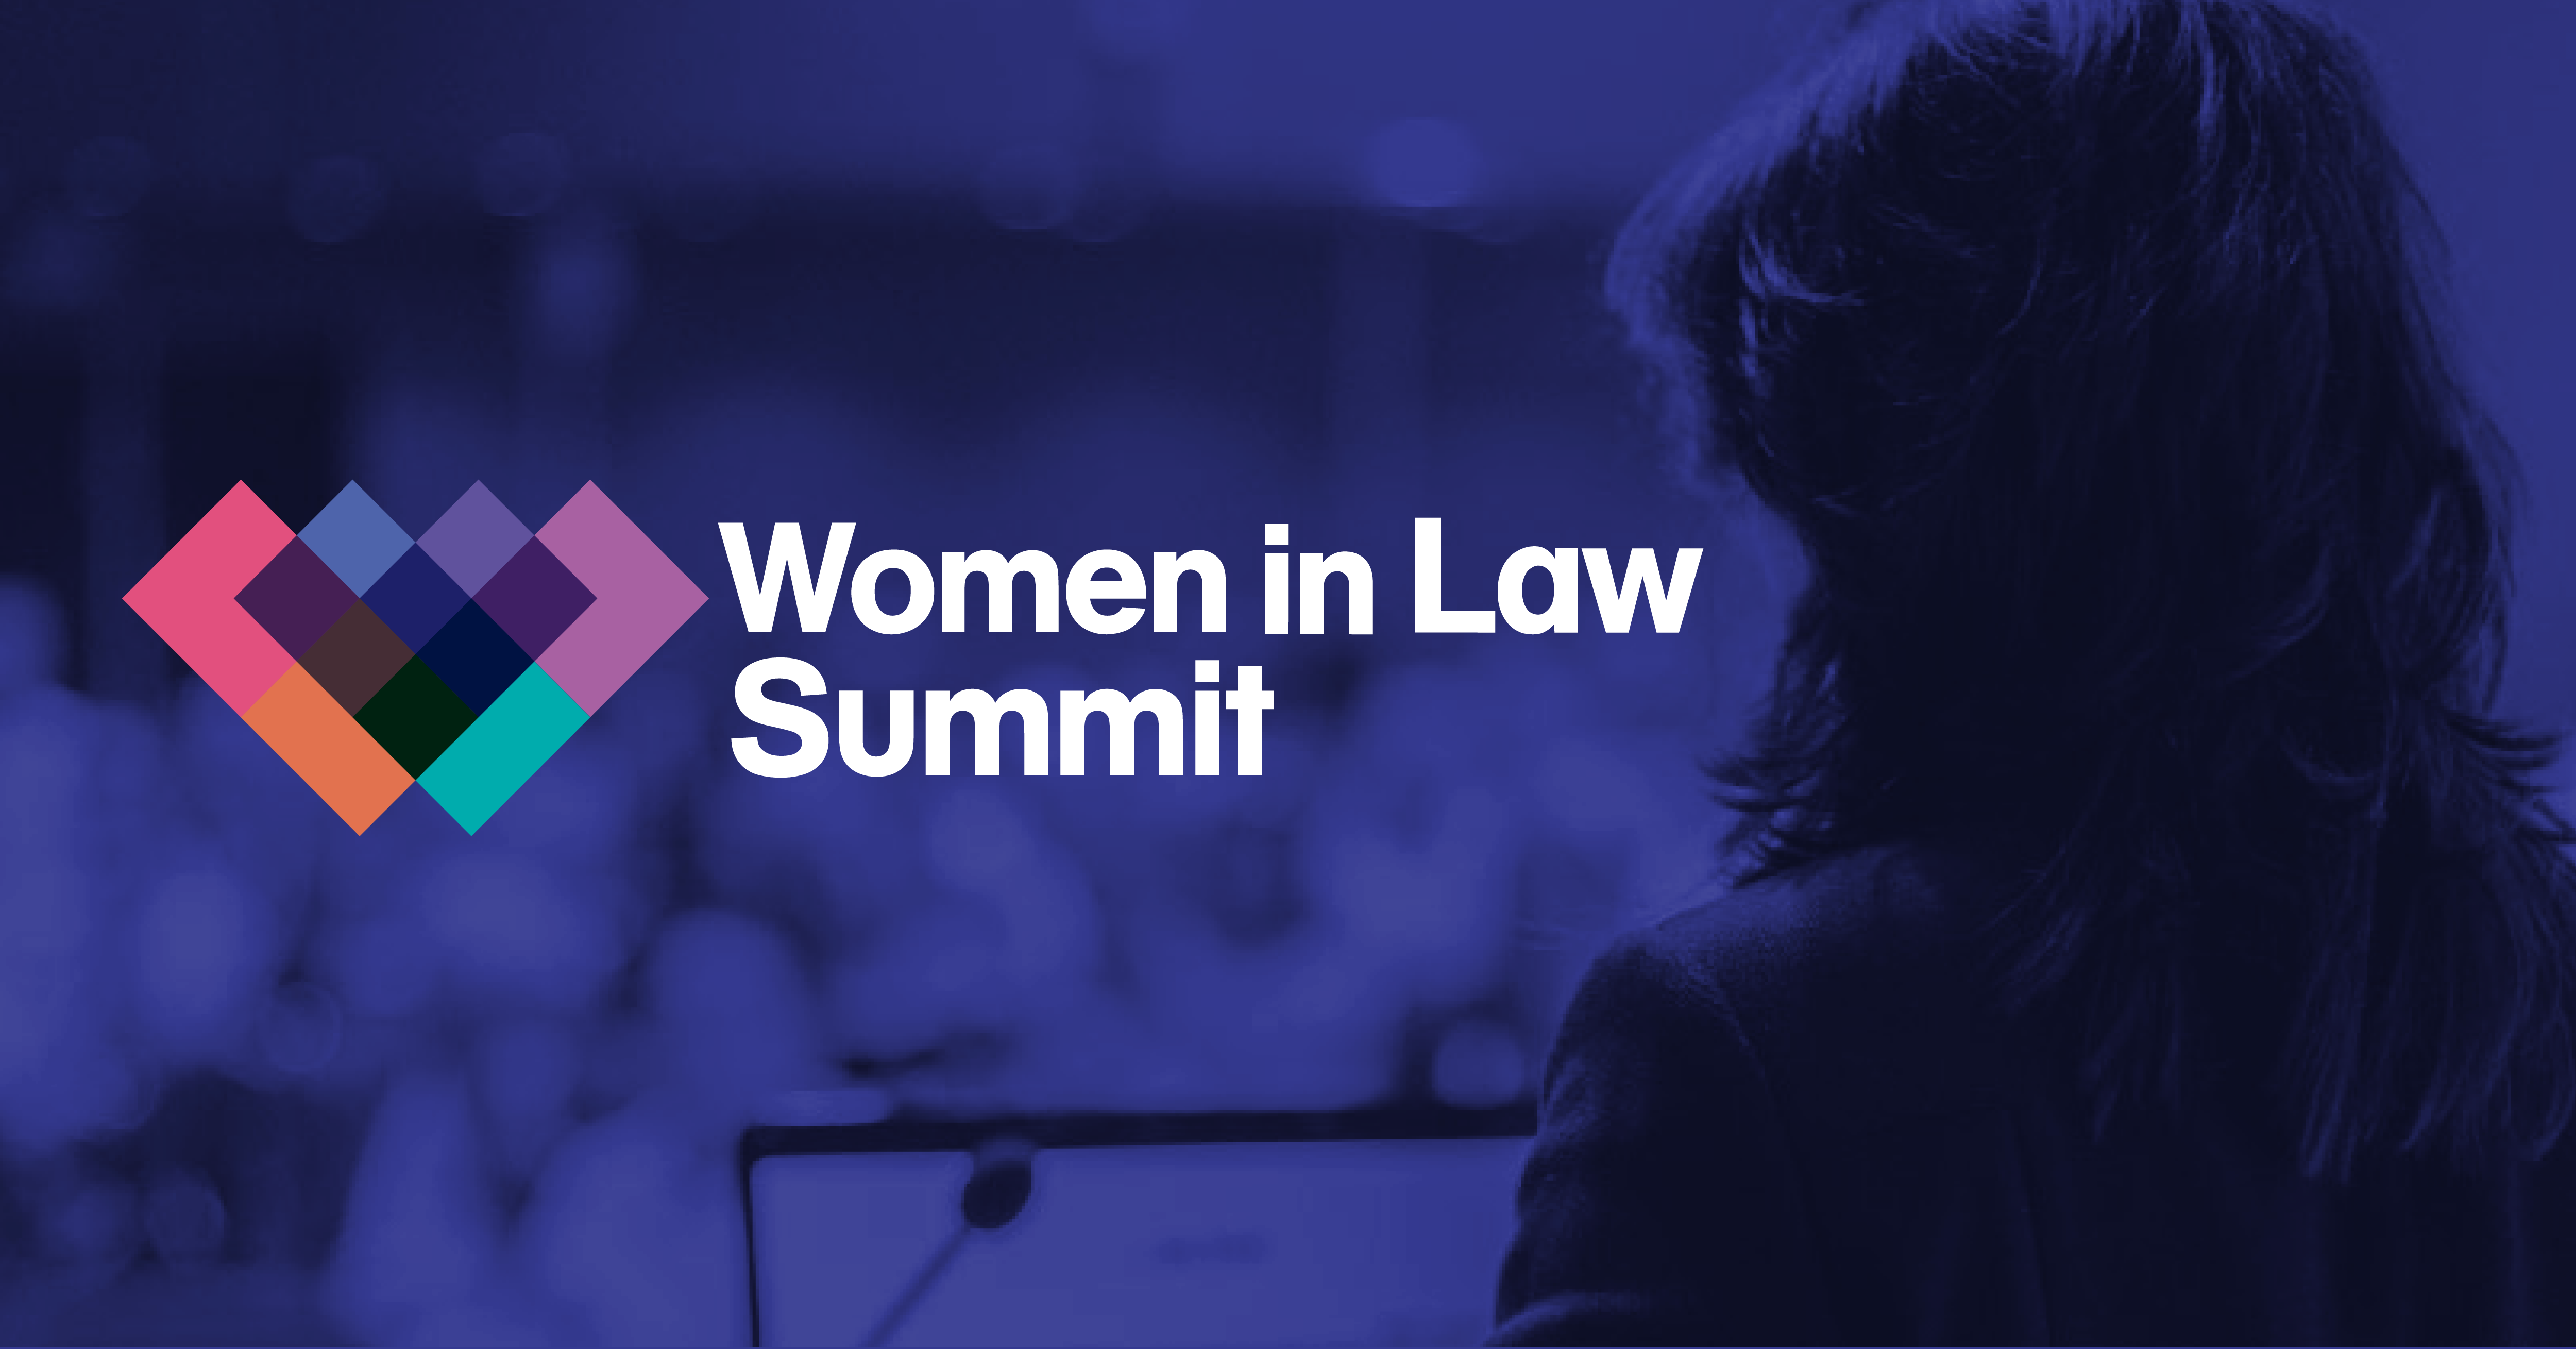 Women in Law Summit 2018